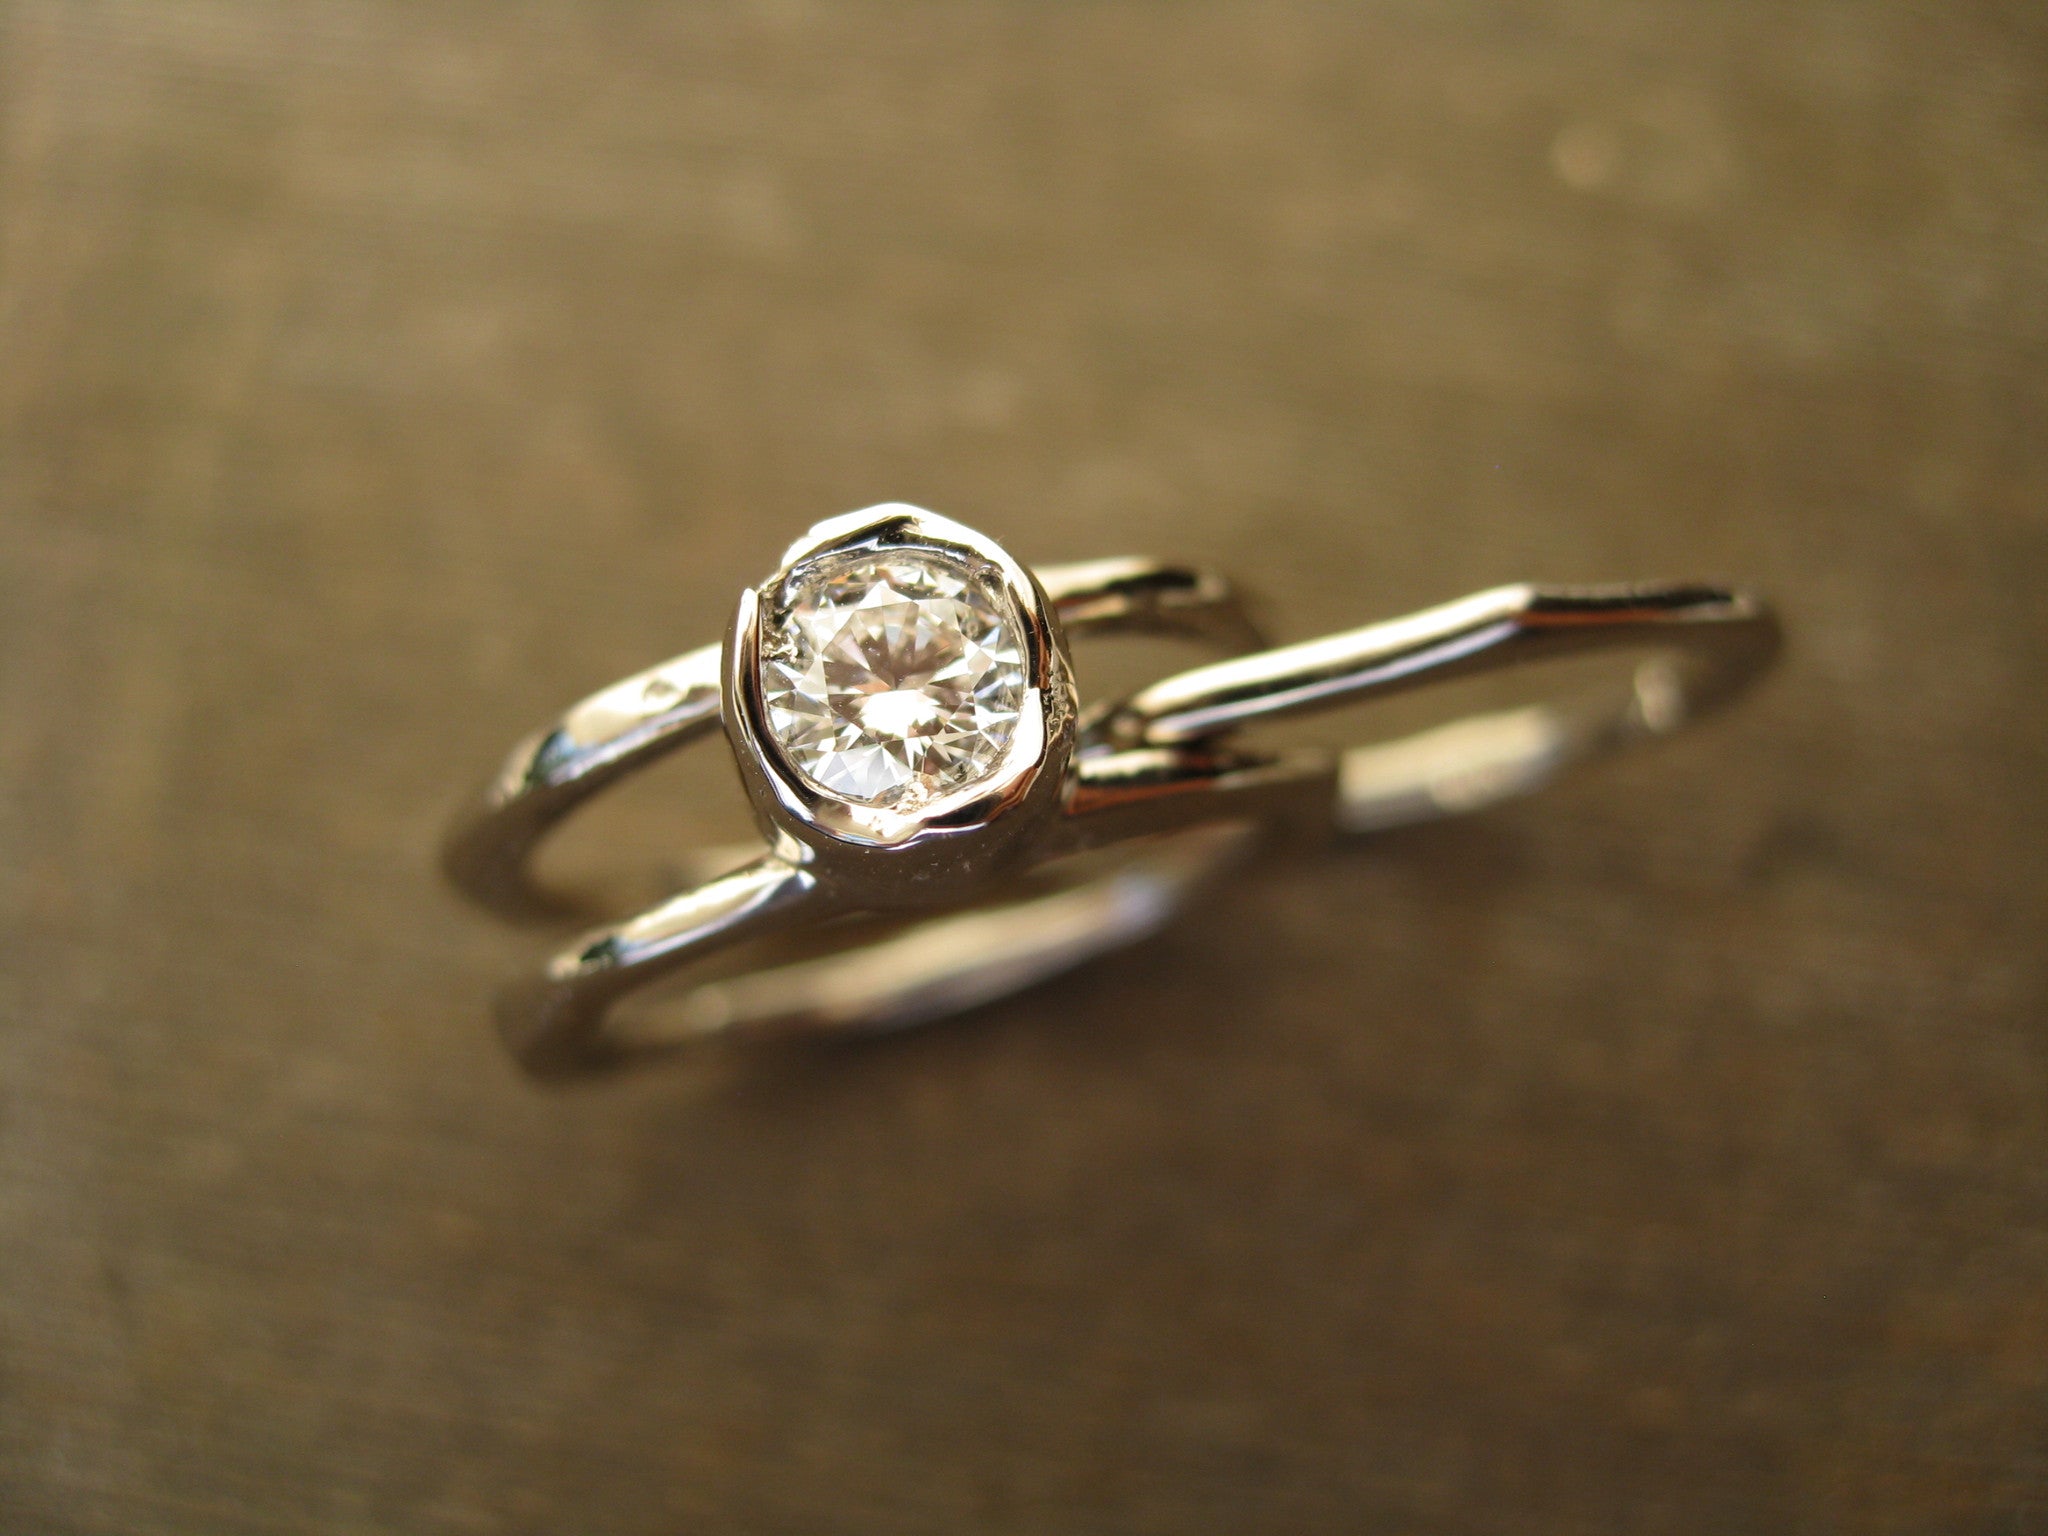 heather arbutus wedding ring set